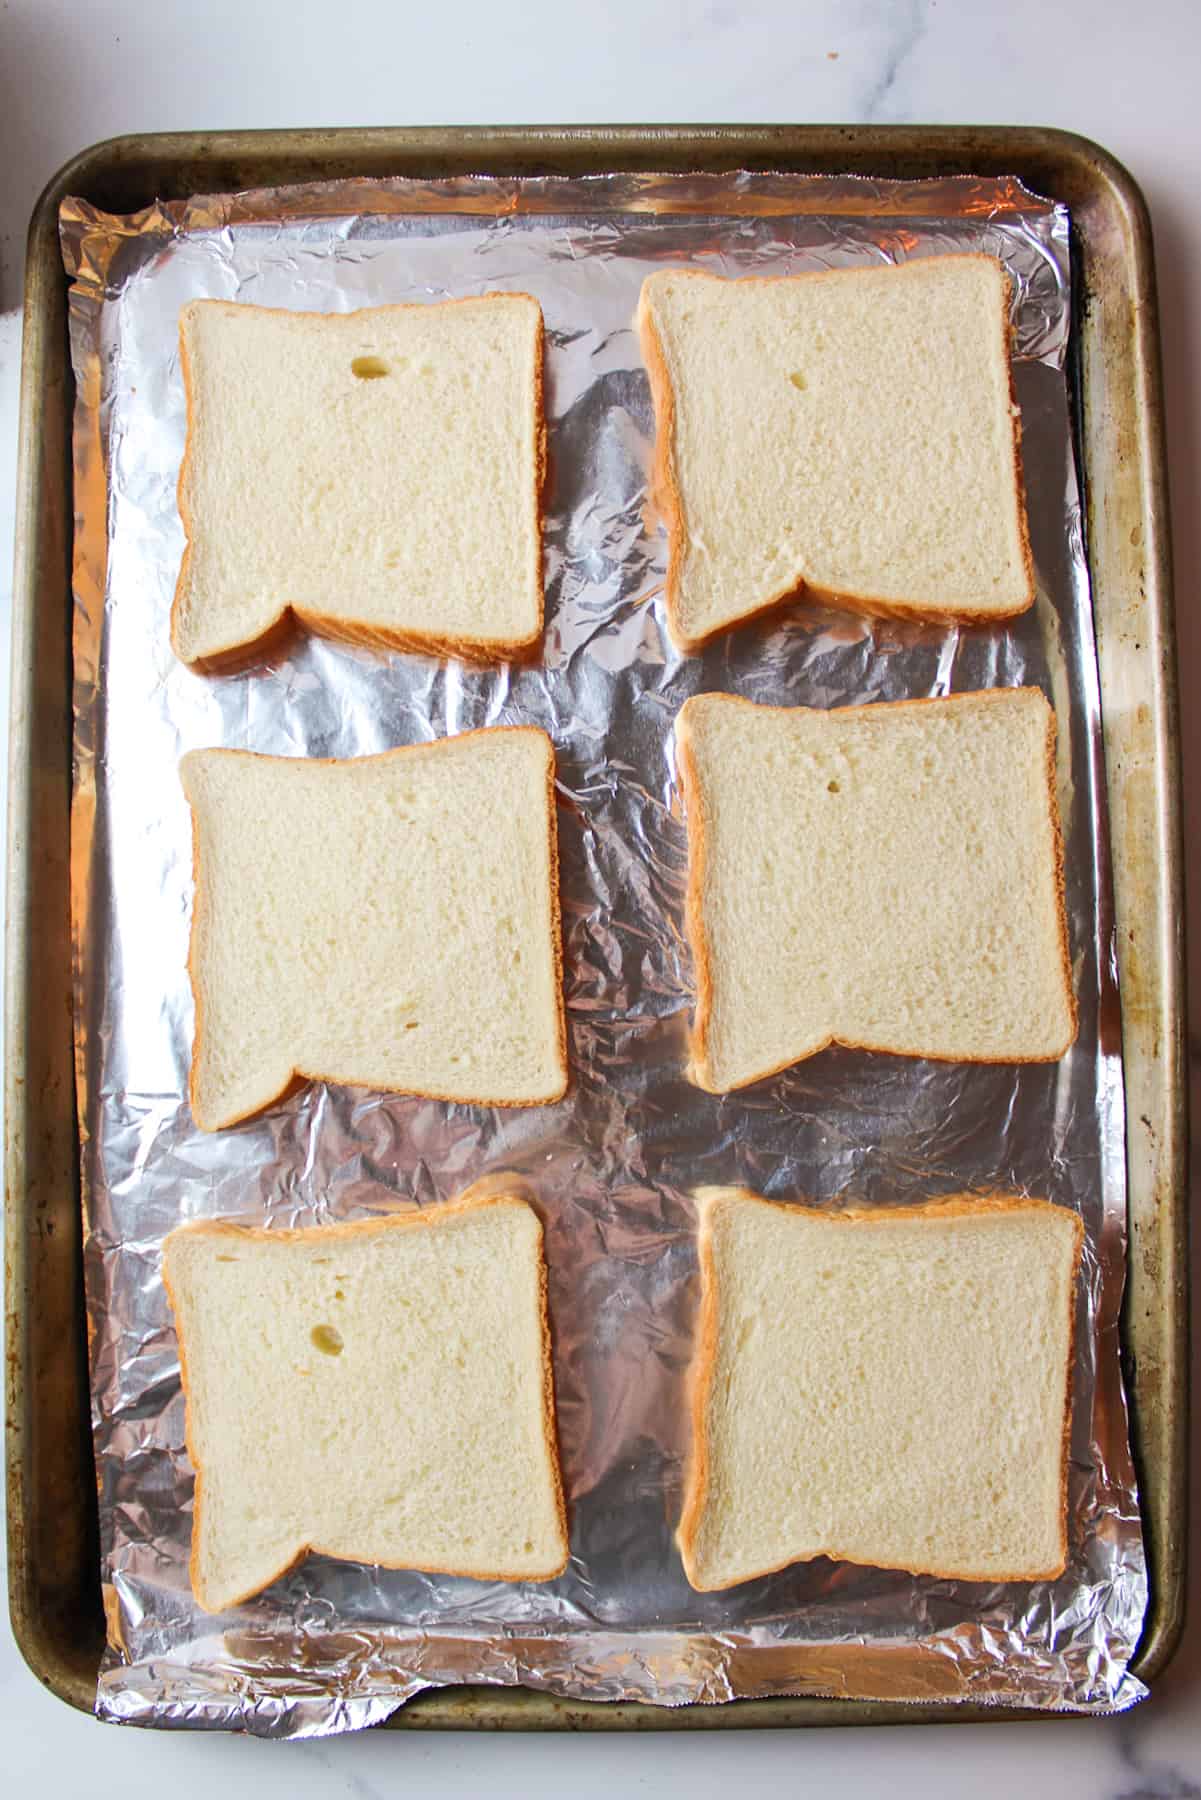 6 slices of sandwich bread on baking sheet.